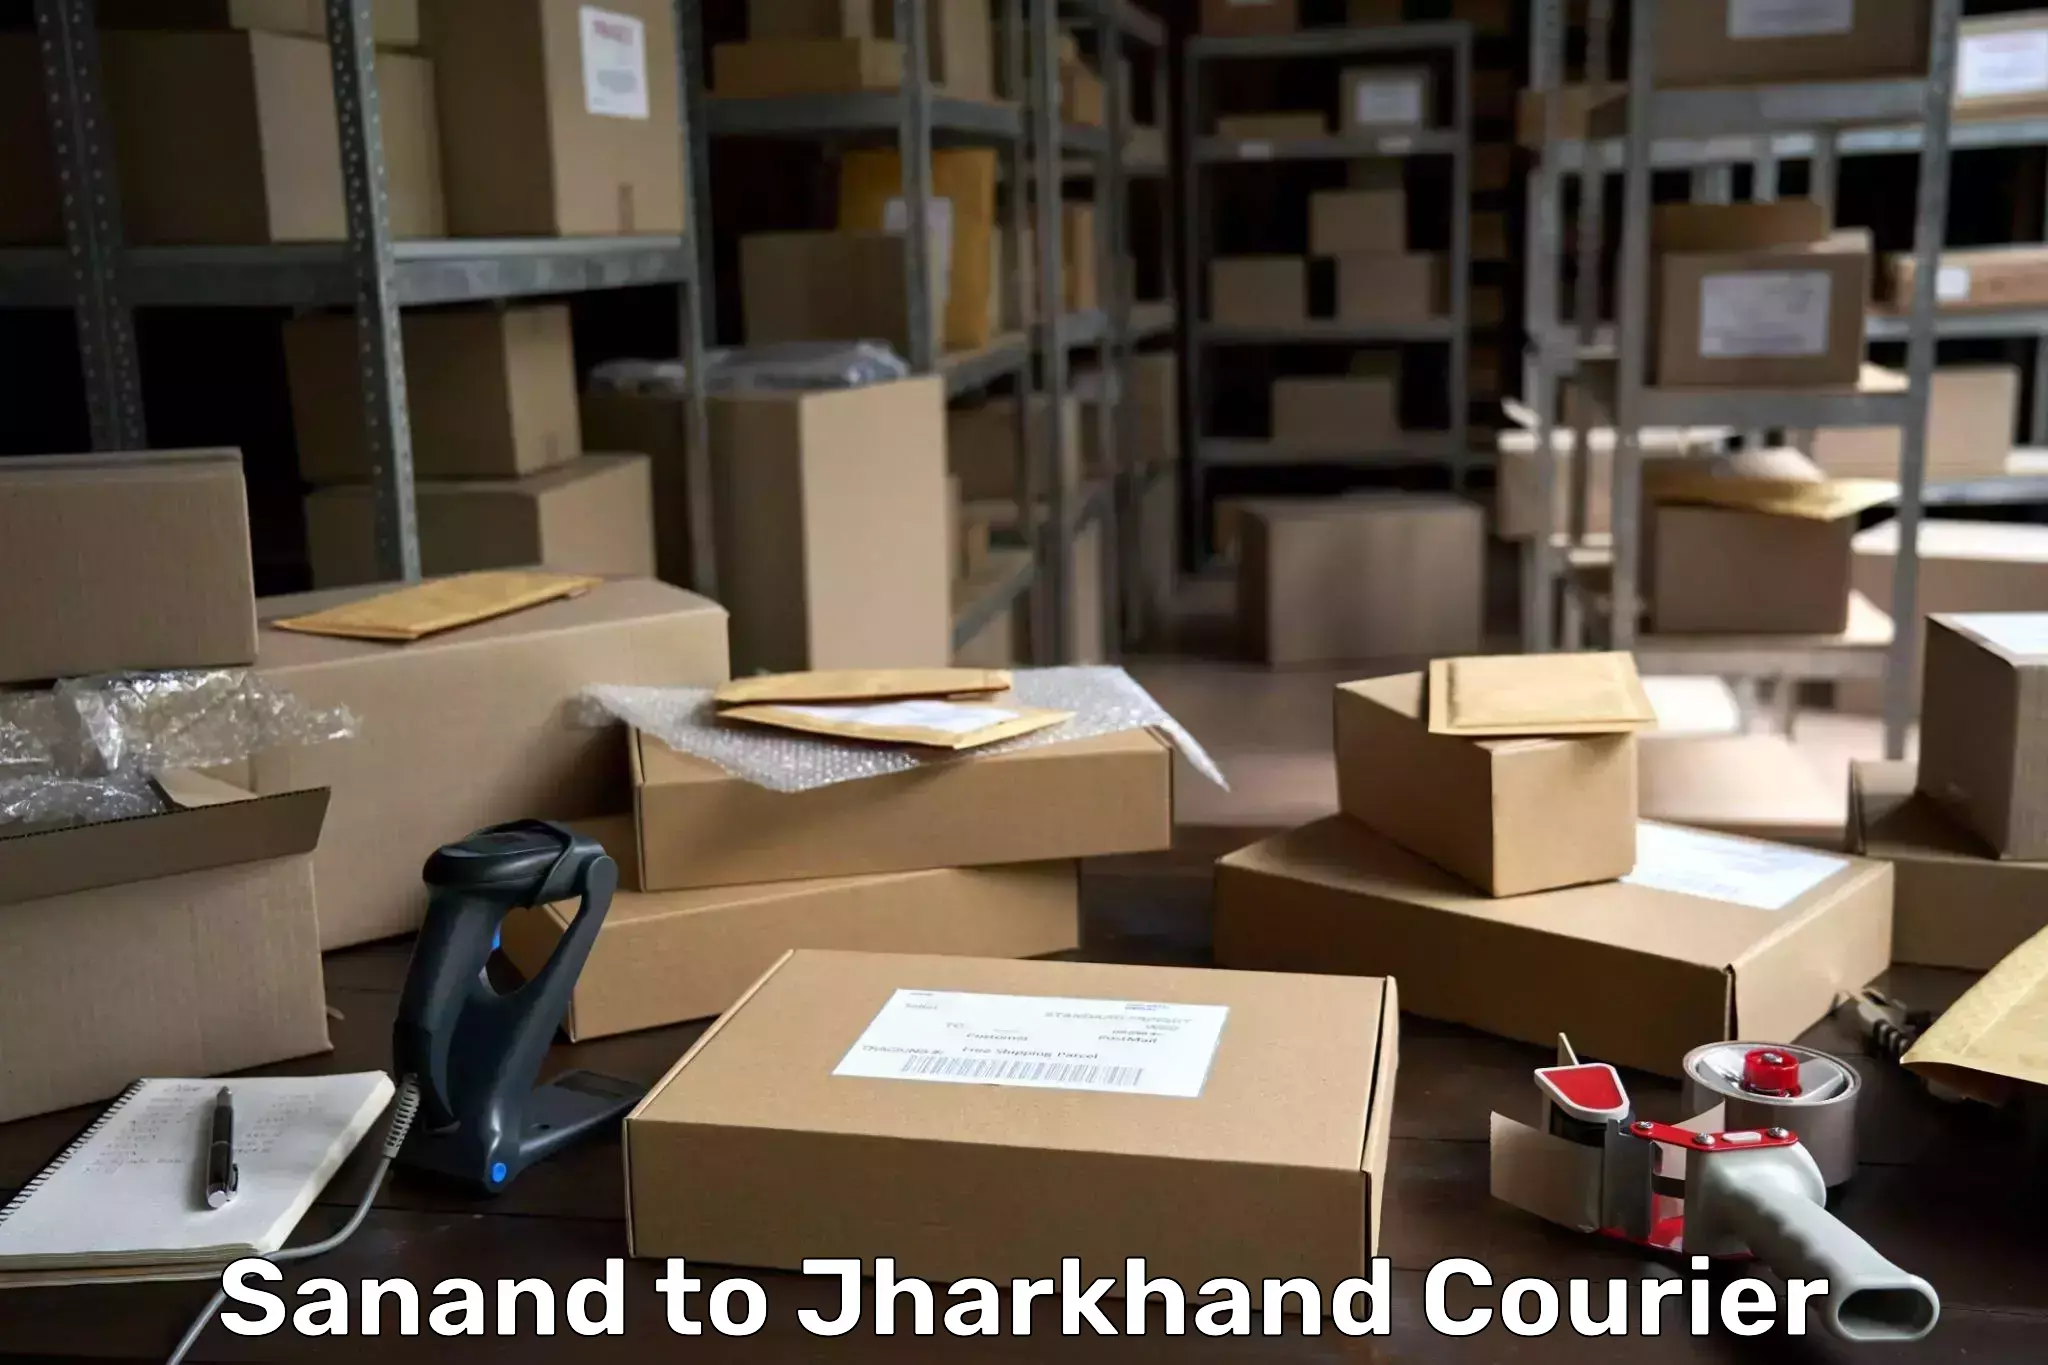 High-priority parcel service Sanand to Godda